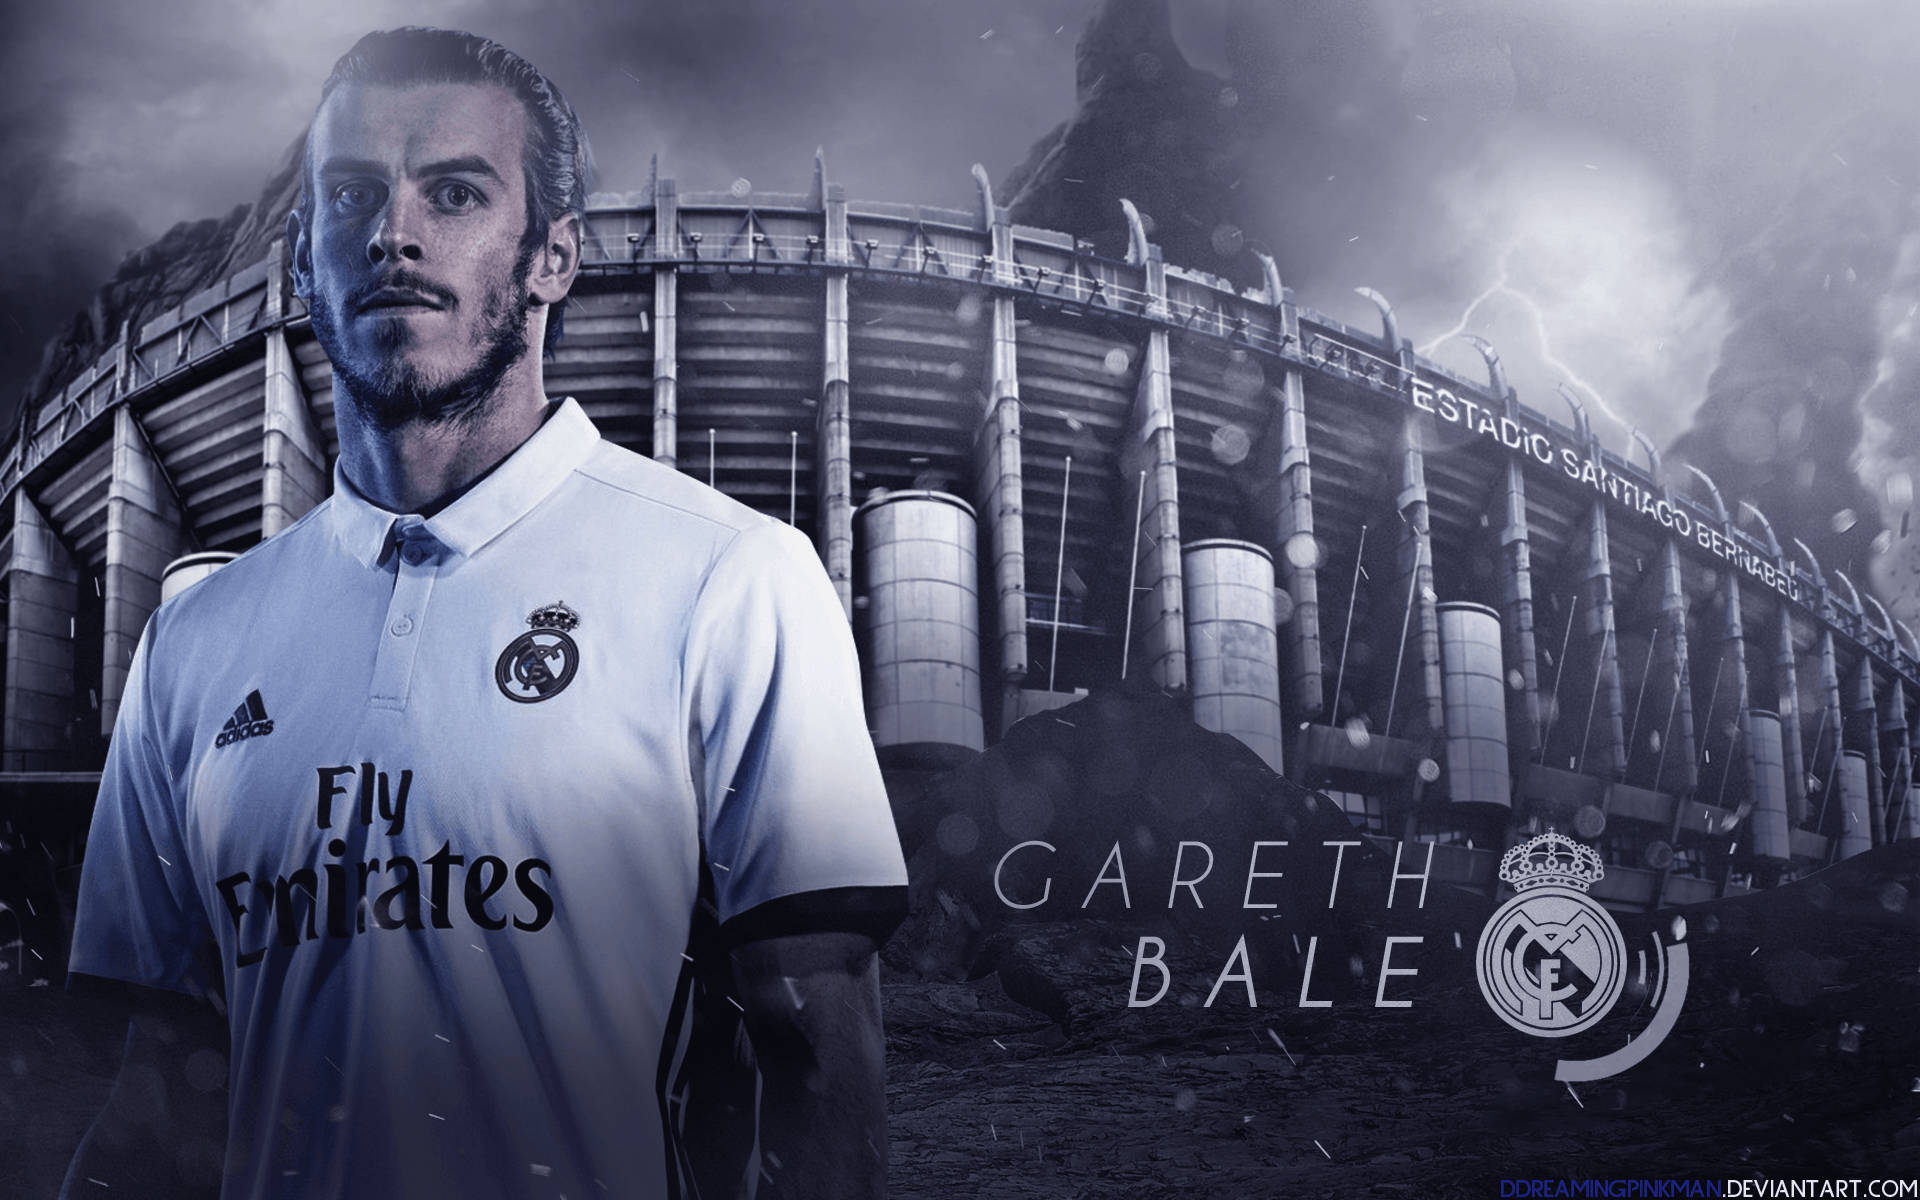 Hình nền về Gareth Bale sẽ khiến bạn trầm trồ trước sự tinh tế và độc đáo của nó. Một ngôi sao bóng đá làng bóng đá thế giới đã truyền cảm hứng cho hàng triệu người hâm mộ trên toàn cầu.